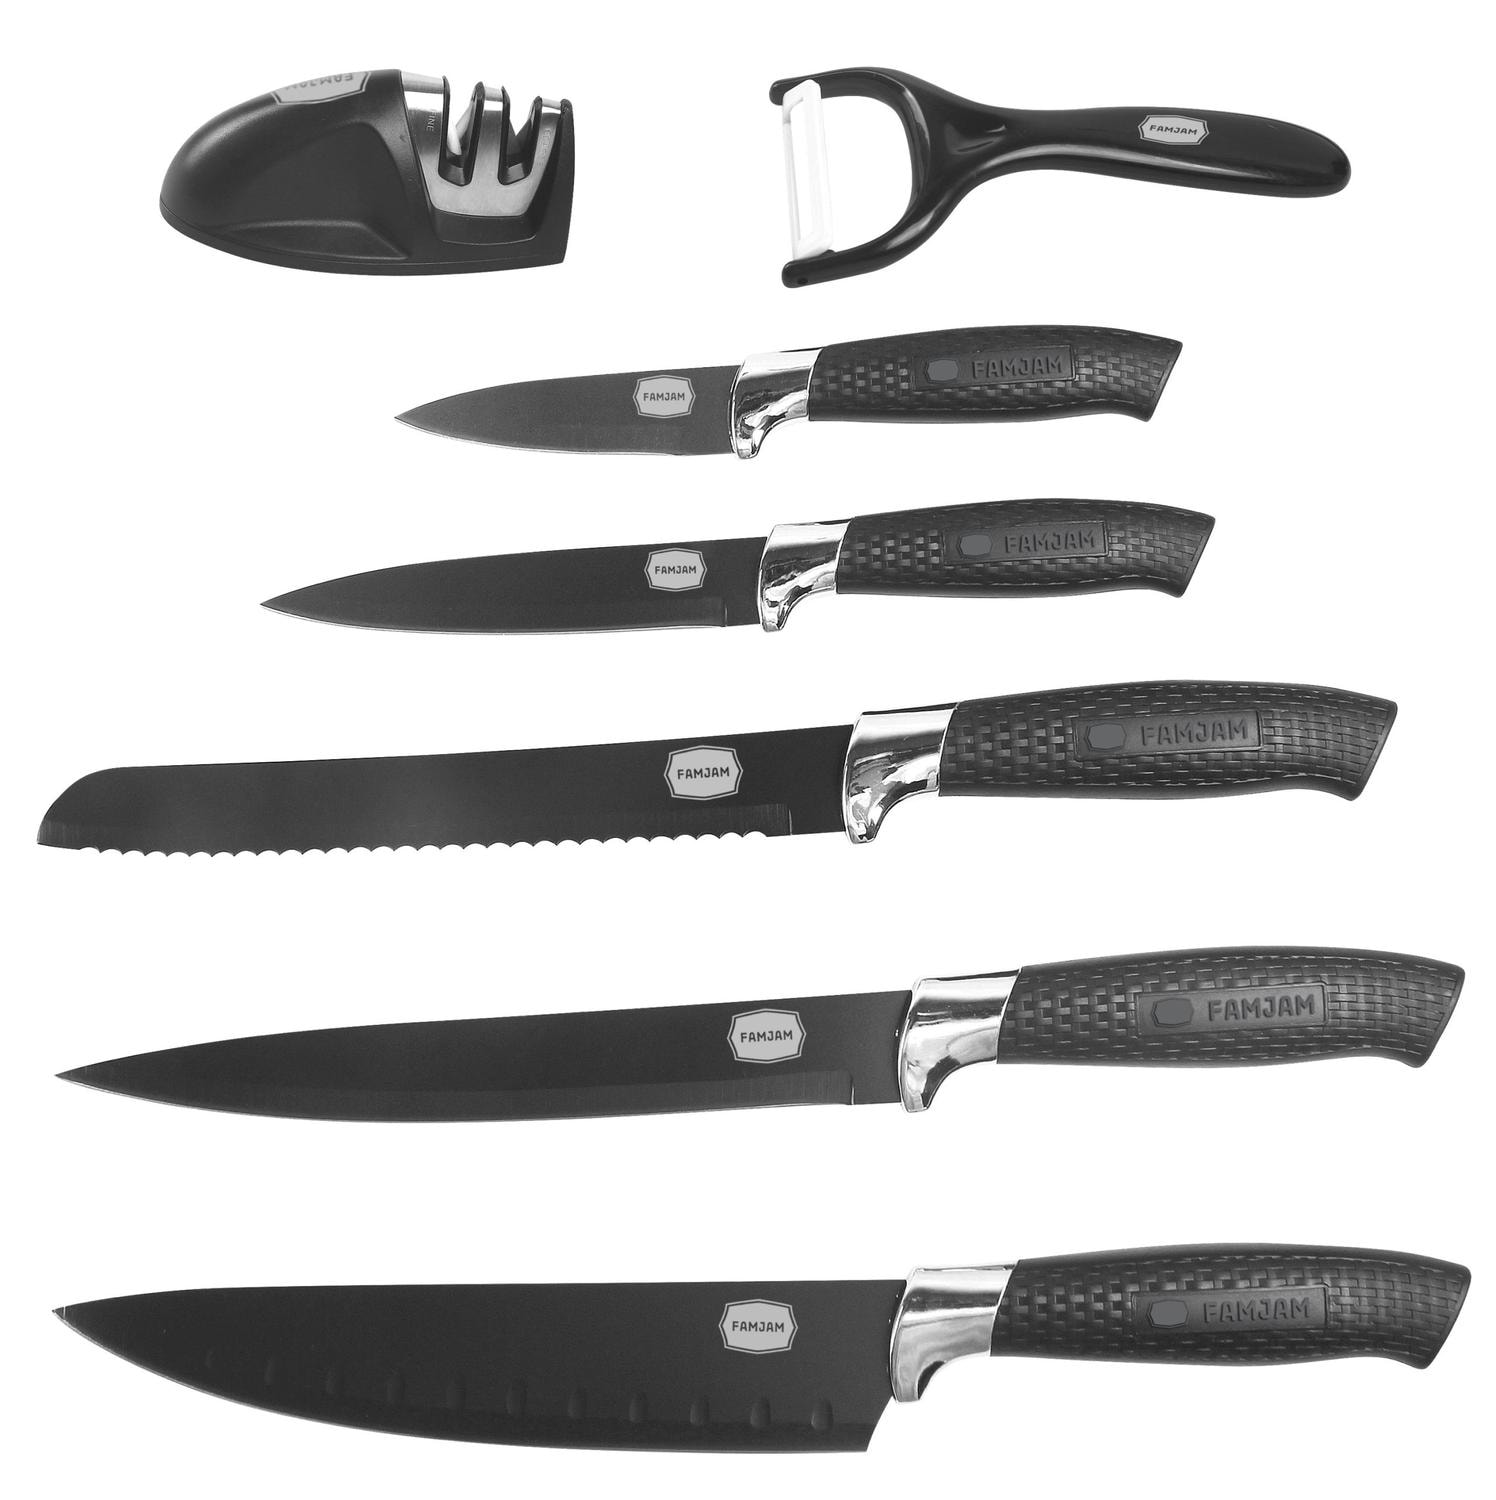 8 Delar Knivset med Ställ för Köket - Köksknivar Skalare och Knivslip Set (1 av 77)